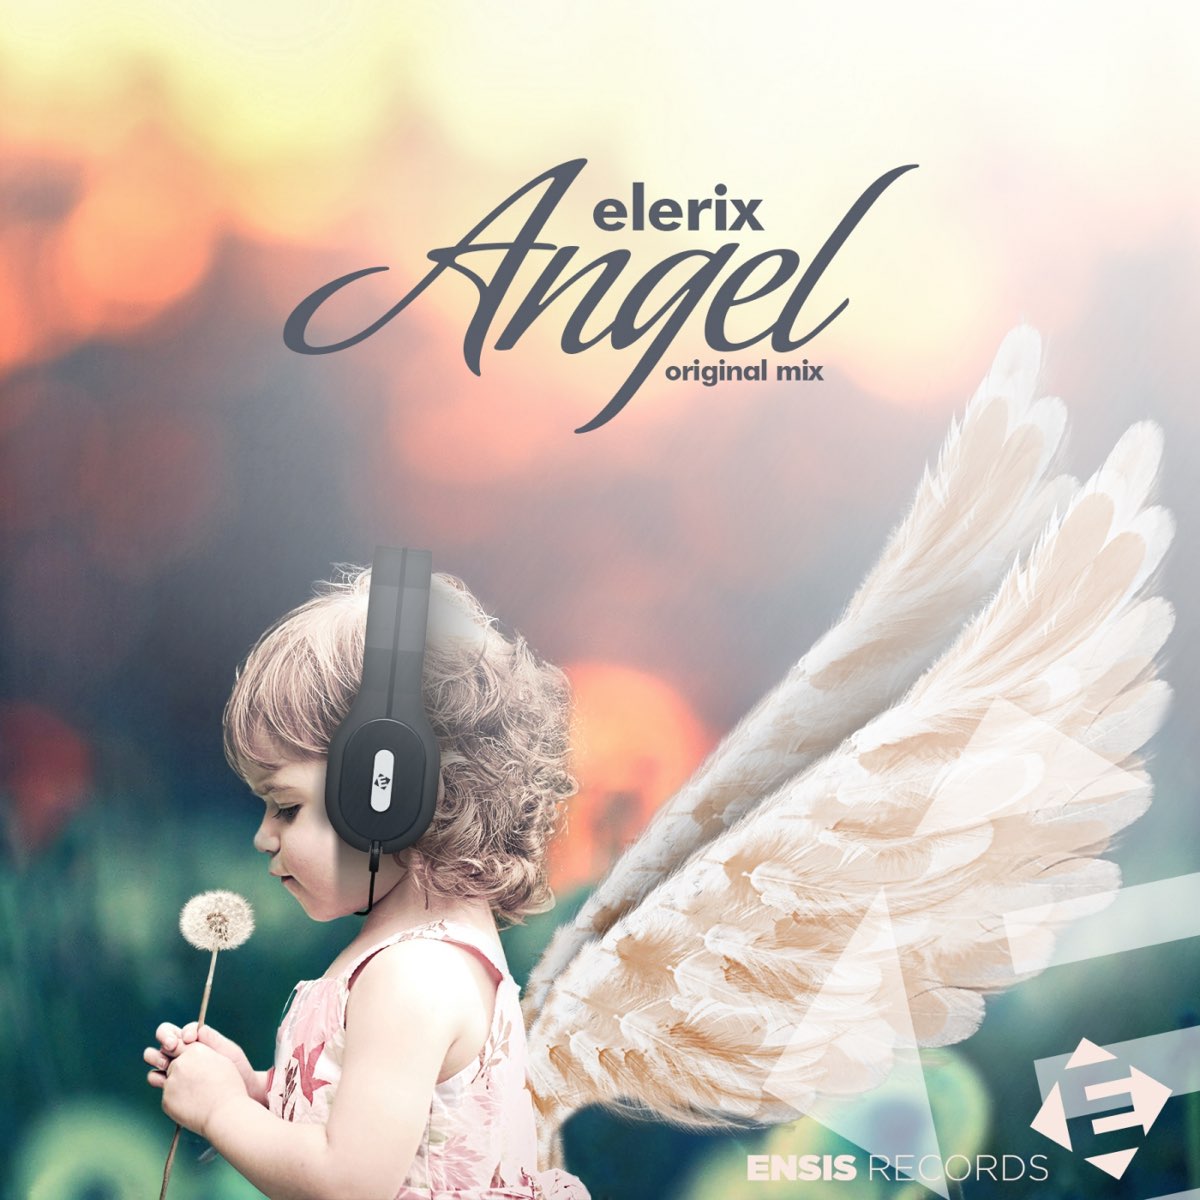 Оригинал песни песня ангела. Альбом с ангелом на обложке. Музыкальный ангел. Ангел певец. Ангел а альбом.